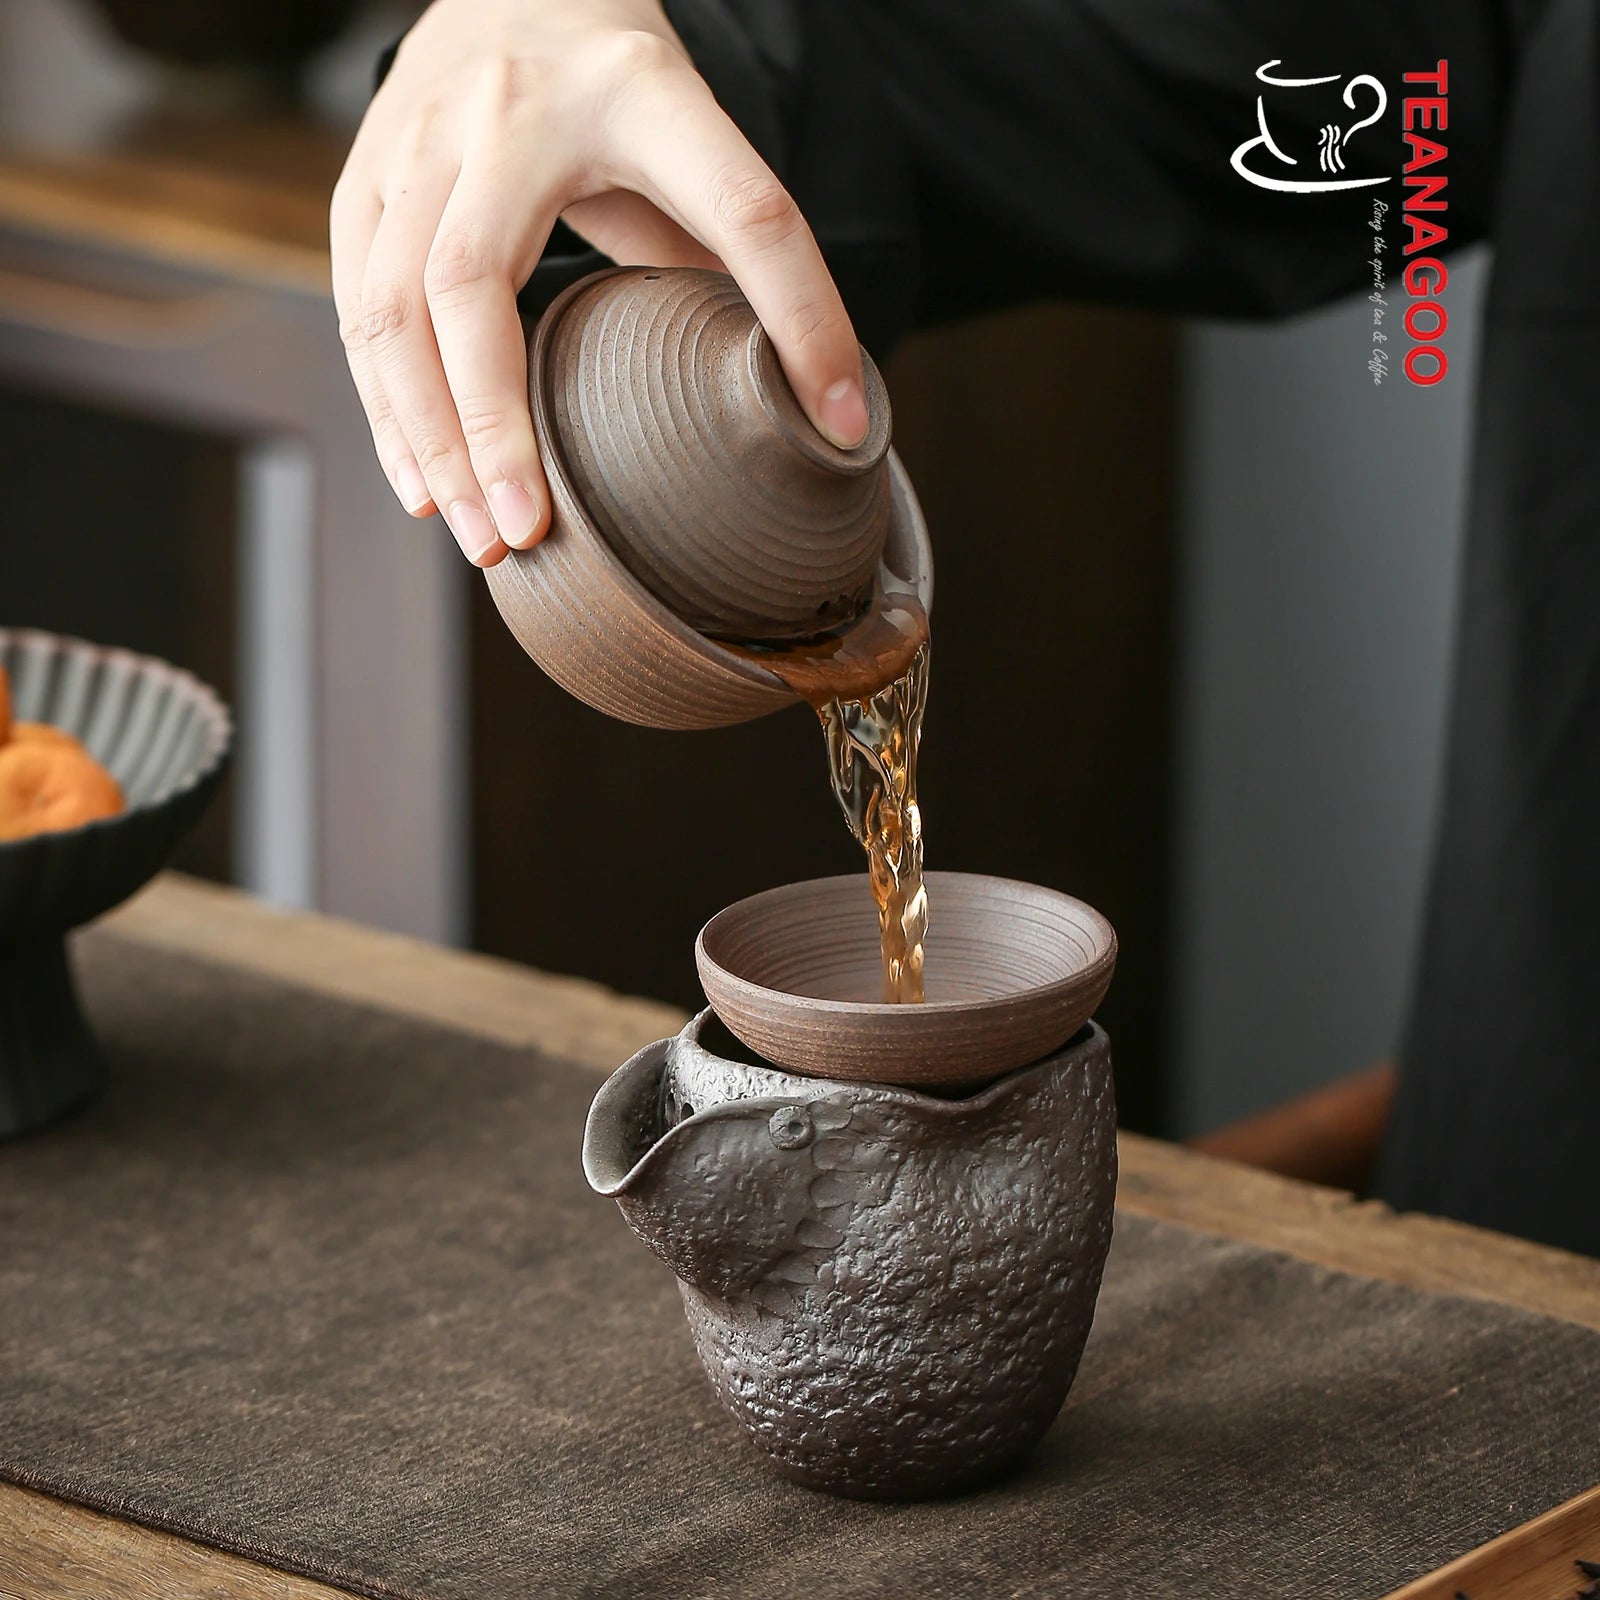 Handmade Pure Clay Gaiwan Ceramic Tea Bowl Gongfu Teaware